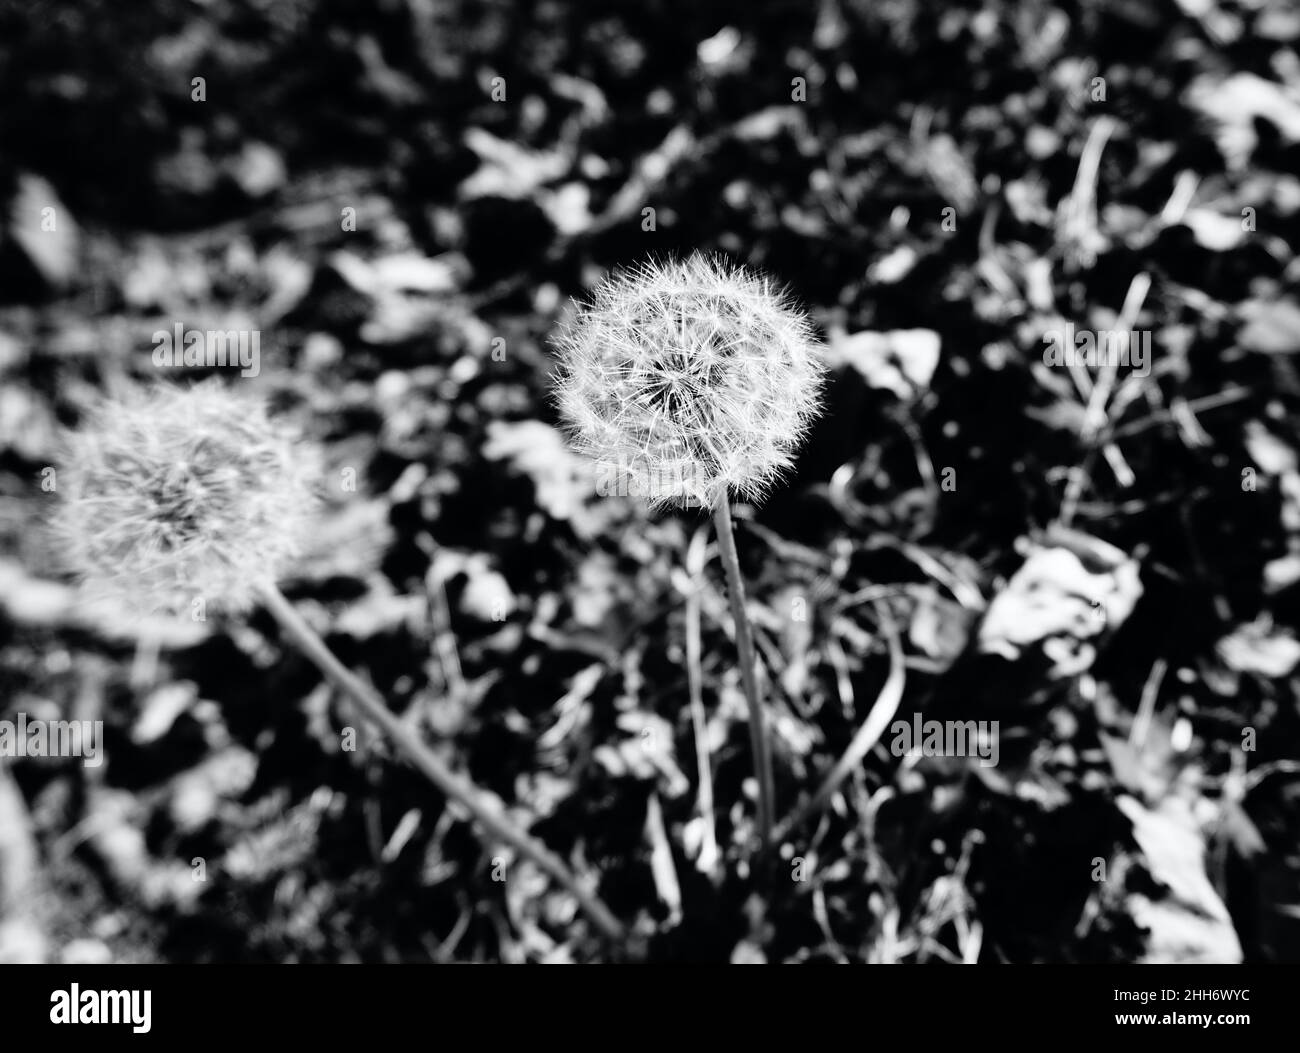 Deux fleurs de pissenlit mortes recouvertes de graines contrastent avec le sol recouvert de feuilles. Photo noir et blanc. Banque D'Images